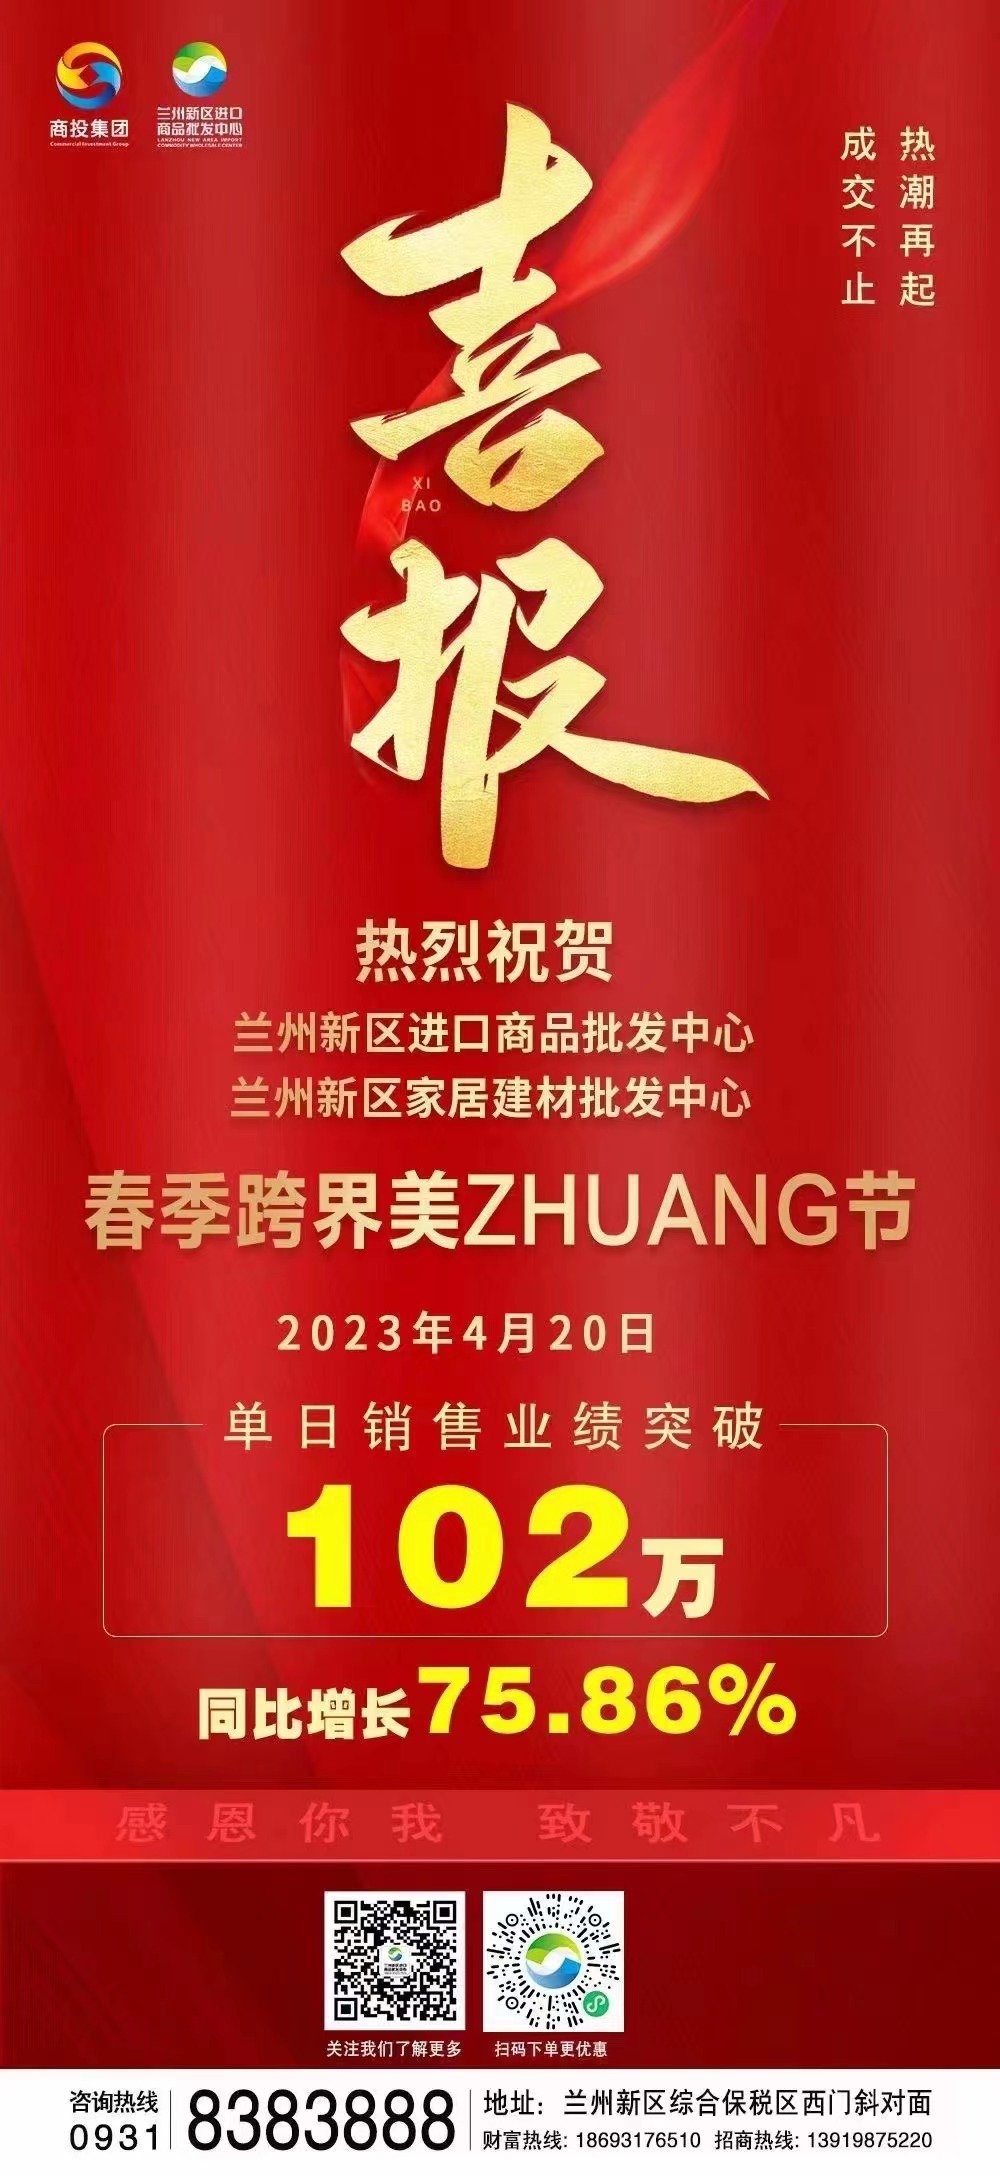 春日来兰州新区嗨购“美zhuang节” 单日销售破百万